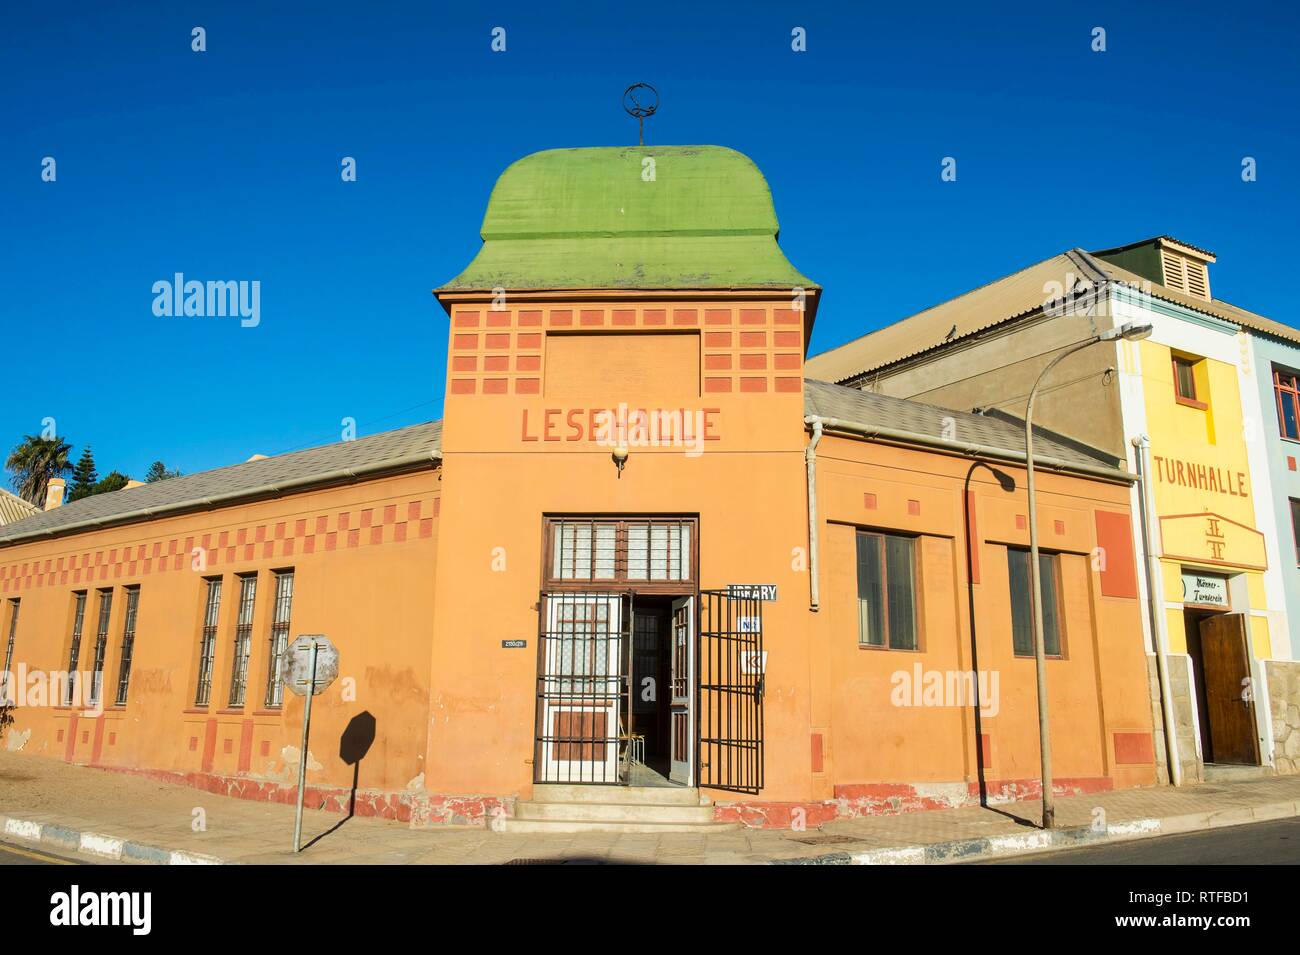 Ancienne Maison Allemande, salle de lecture, Lesehalle, Lüderitz, Namibie Banque D'Images